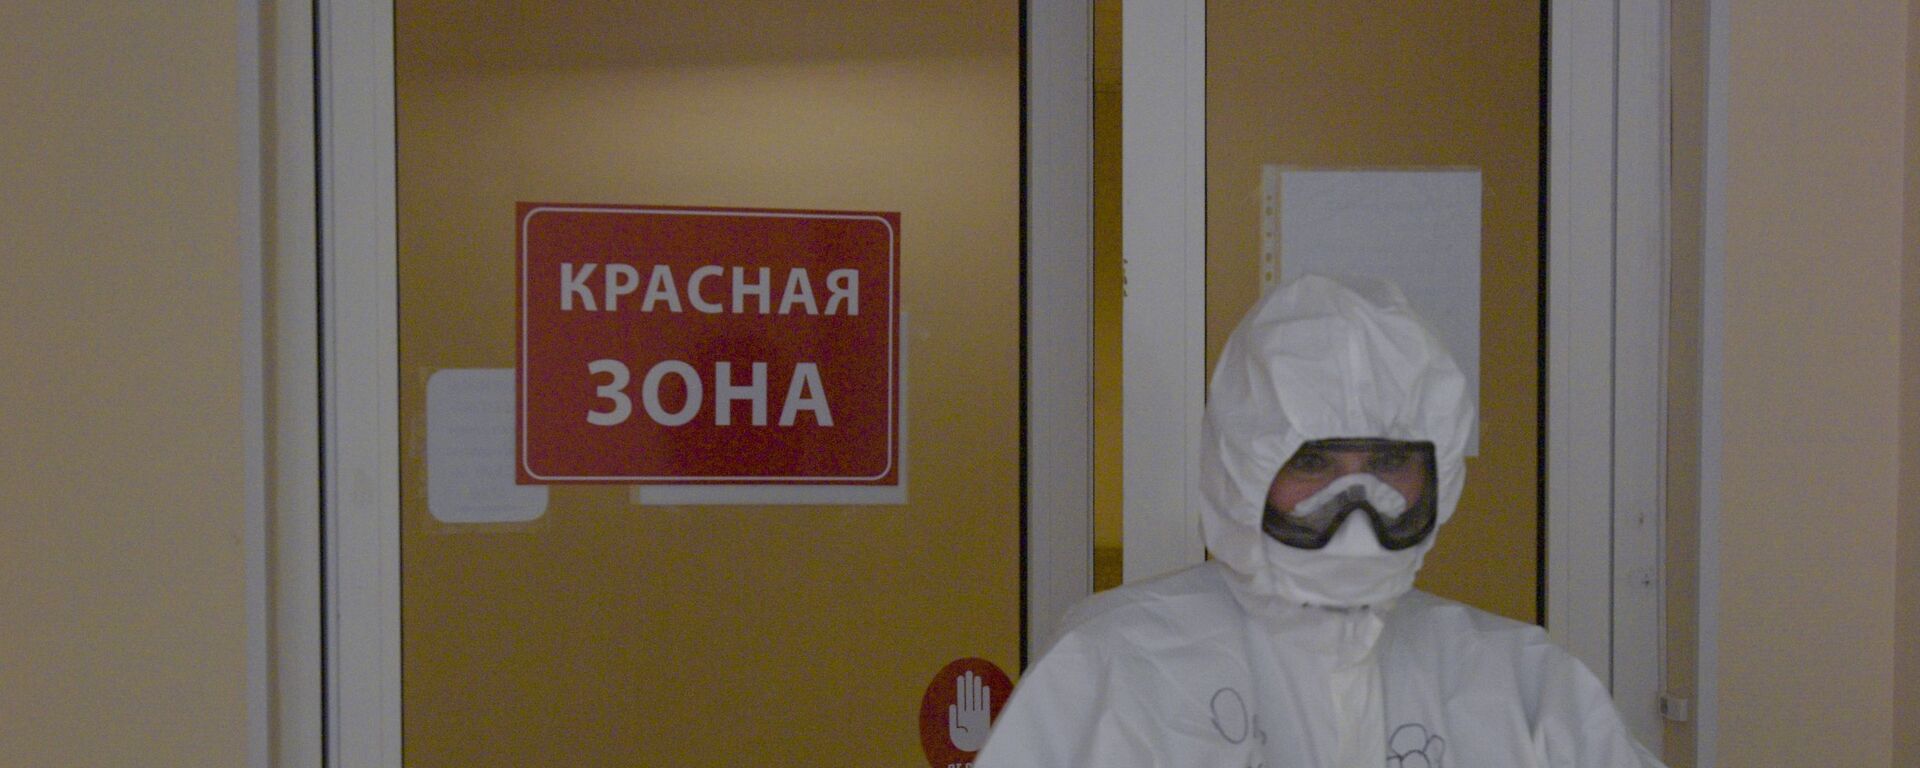 Медицинский работник в больнице, где лечатся зараженные COVID-19 - Sputnik Беларусь, 1920, 01.02.2021